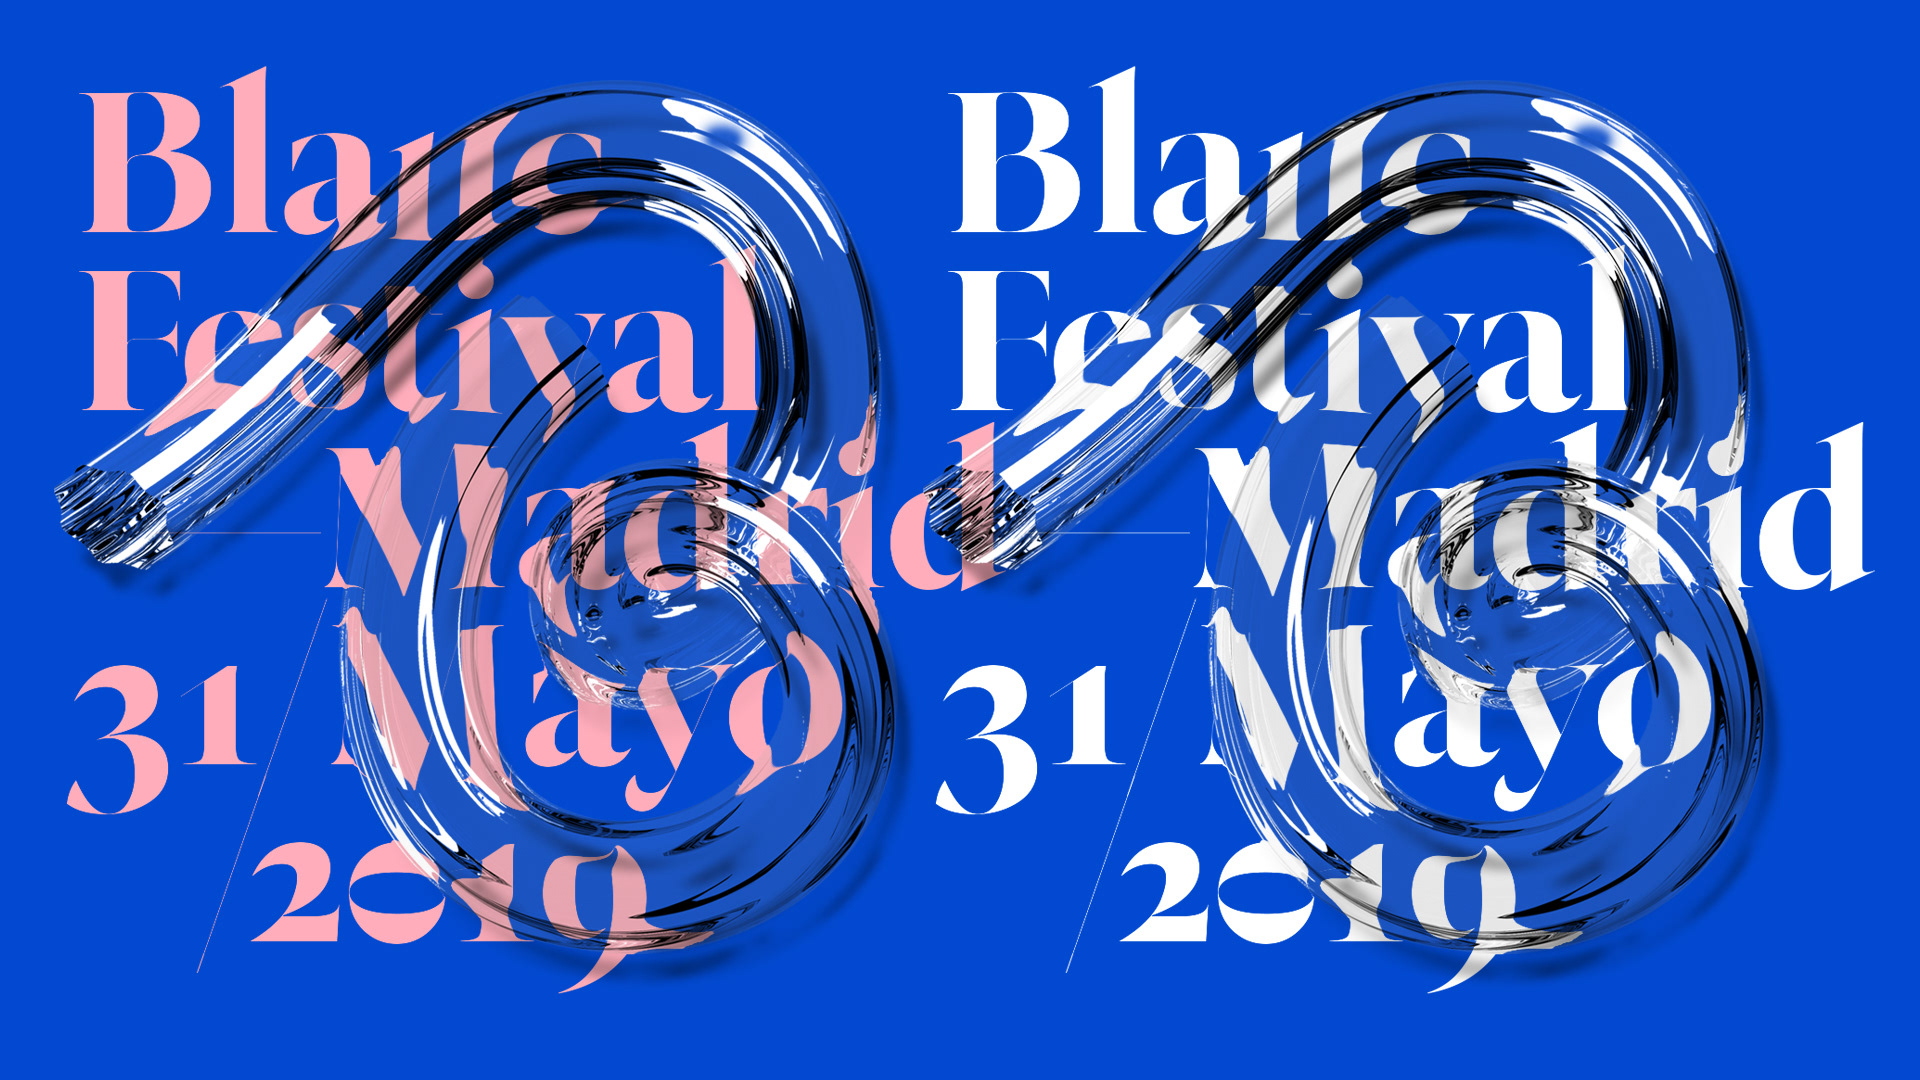 Blanc Festival 19 Identity3ef2da83406219.5d3b1038e5b05.jpg